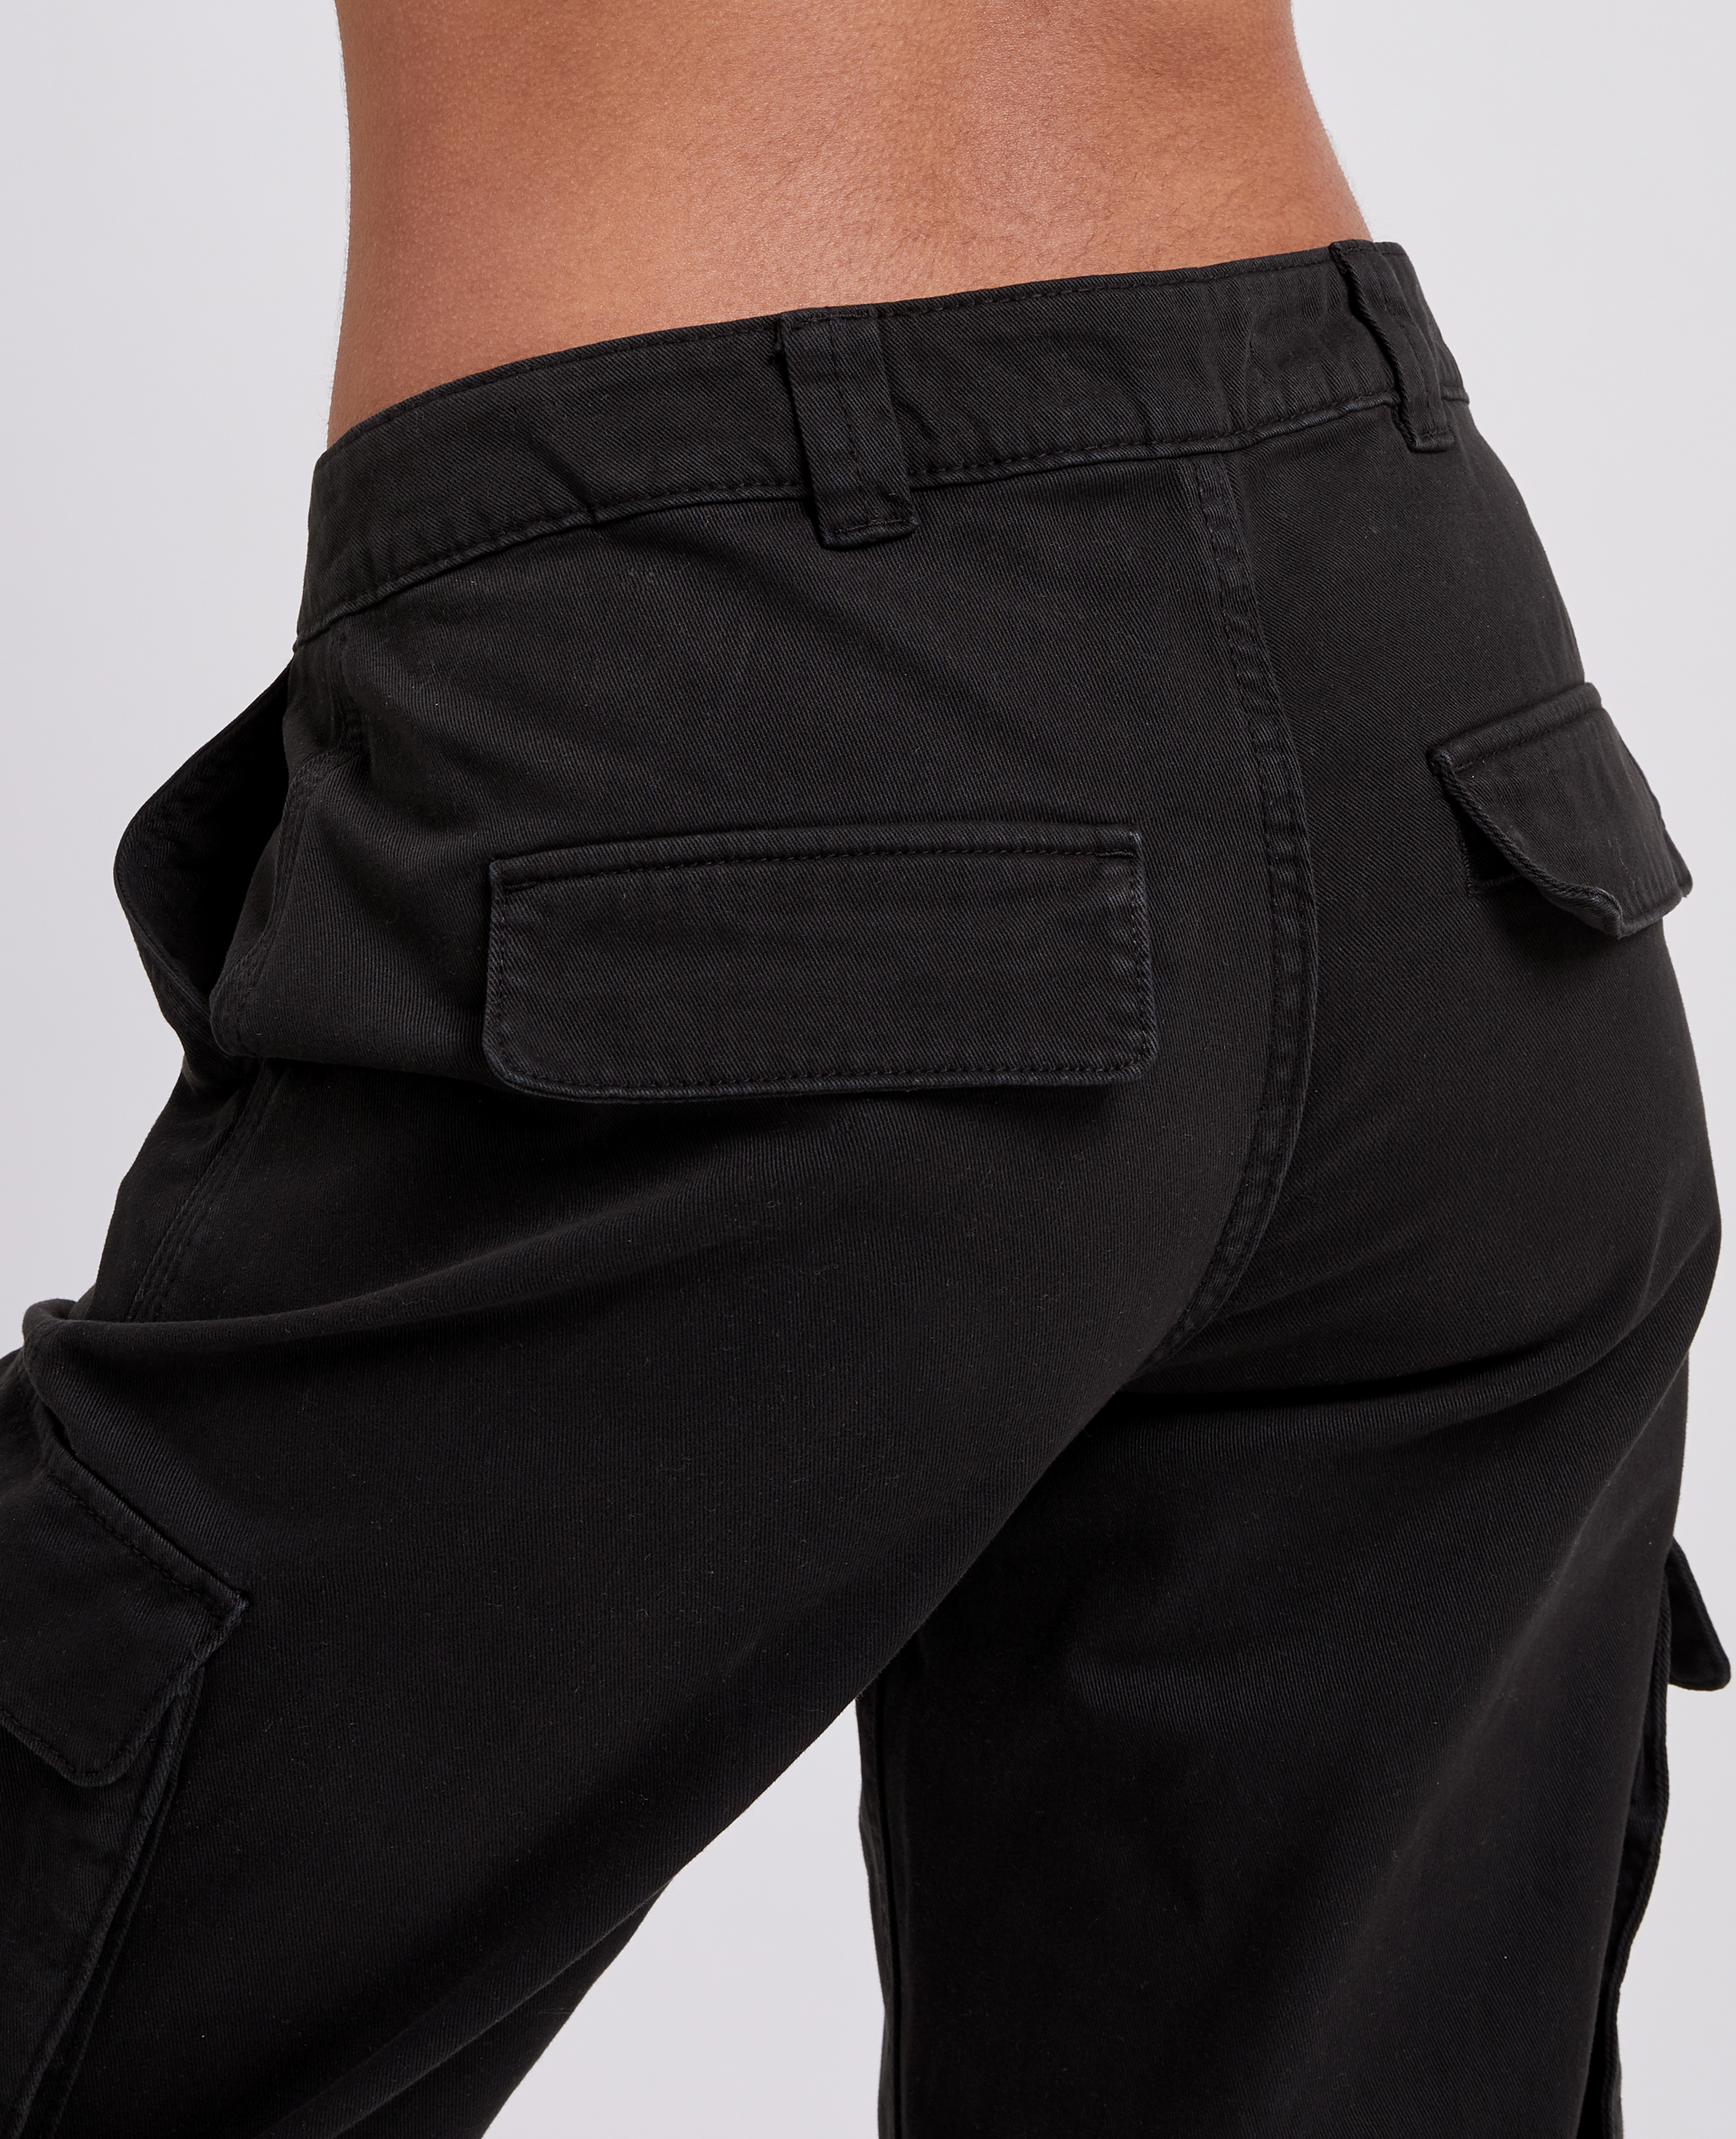 Pantalon droit cargo taille basse noir - Pimkie